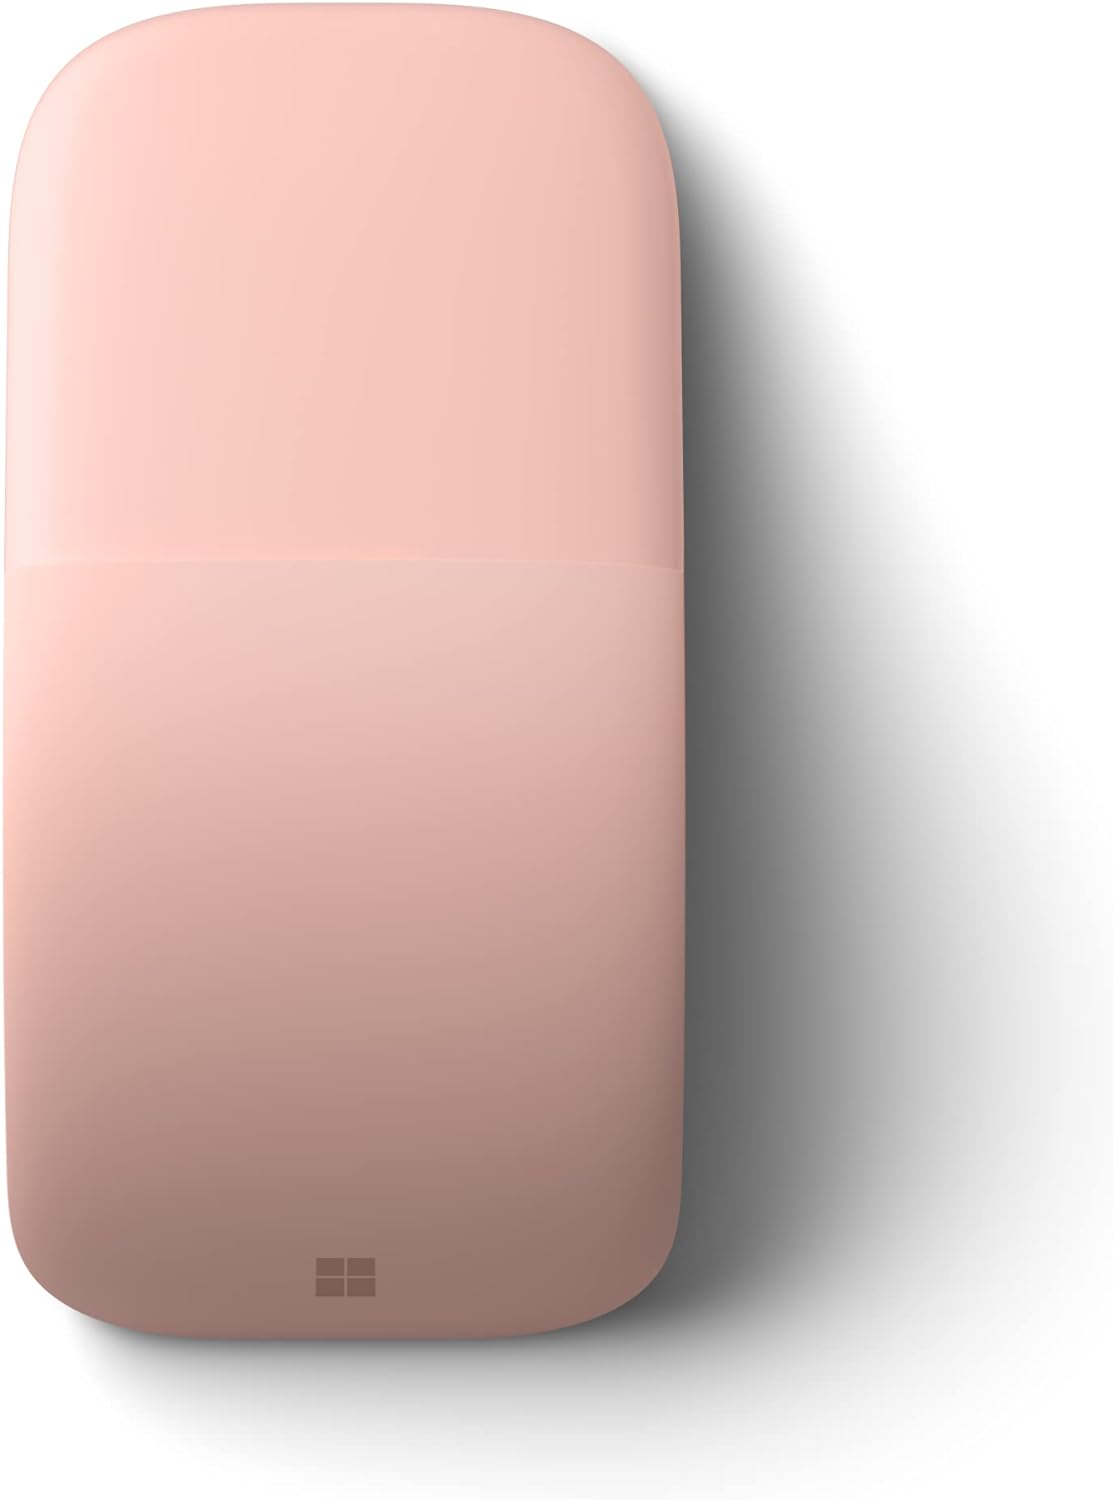 Microsoft Surface Arc Maus (ELG-00028) - Pink - optisch, 2 Tasten, kabellos, Bluetooth 4.0 